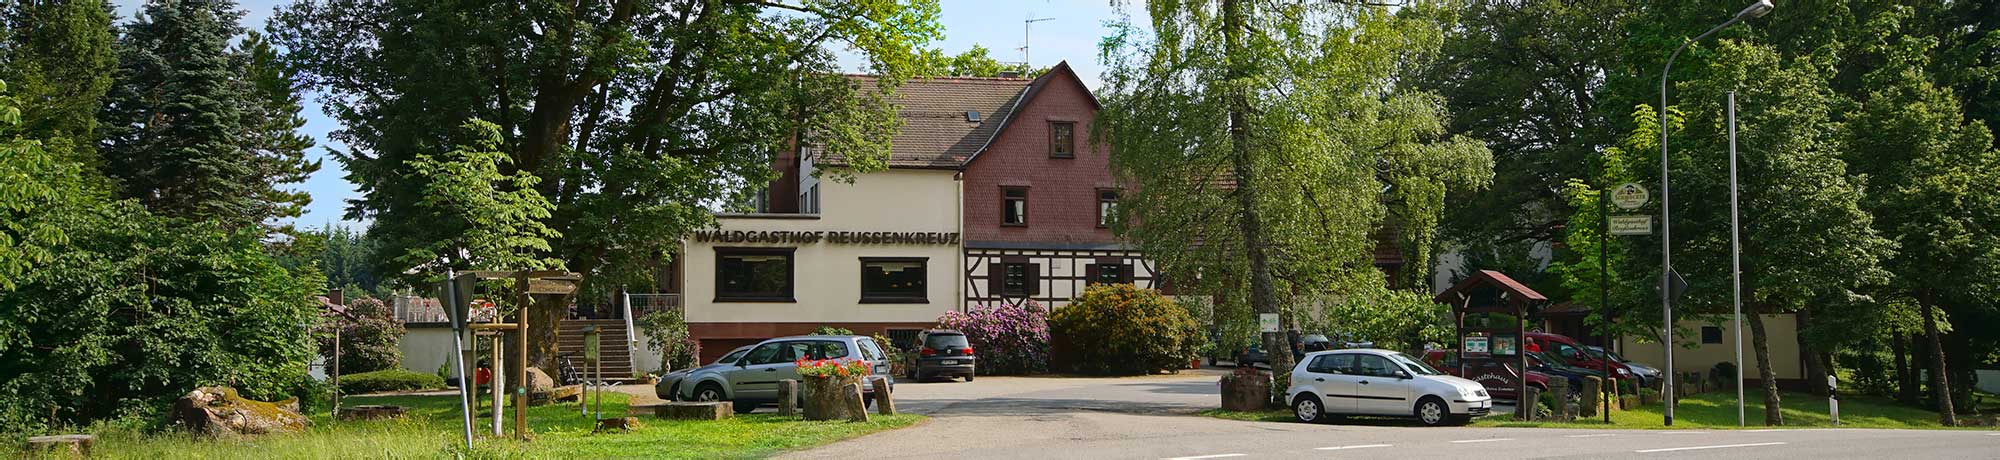 Waldgasthof-Reussenkreutz-Startseite